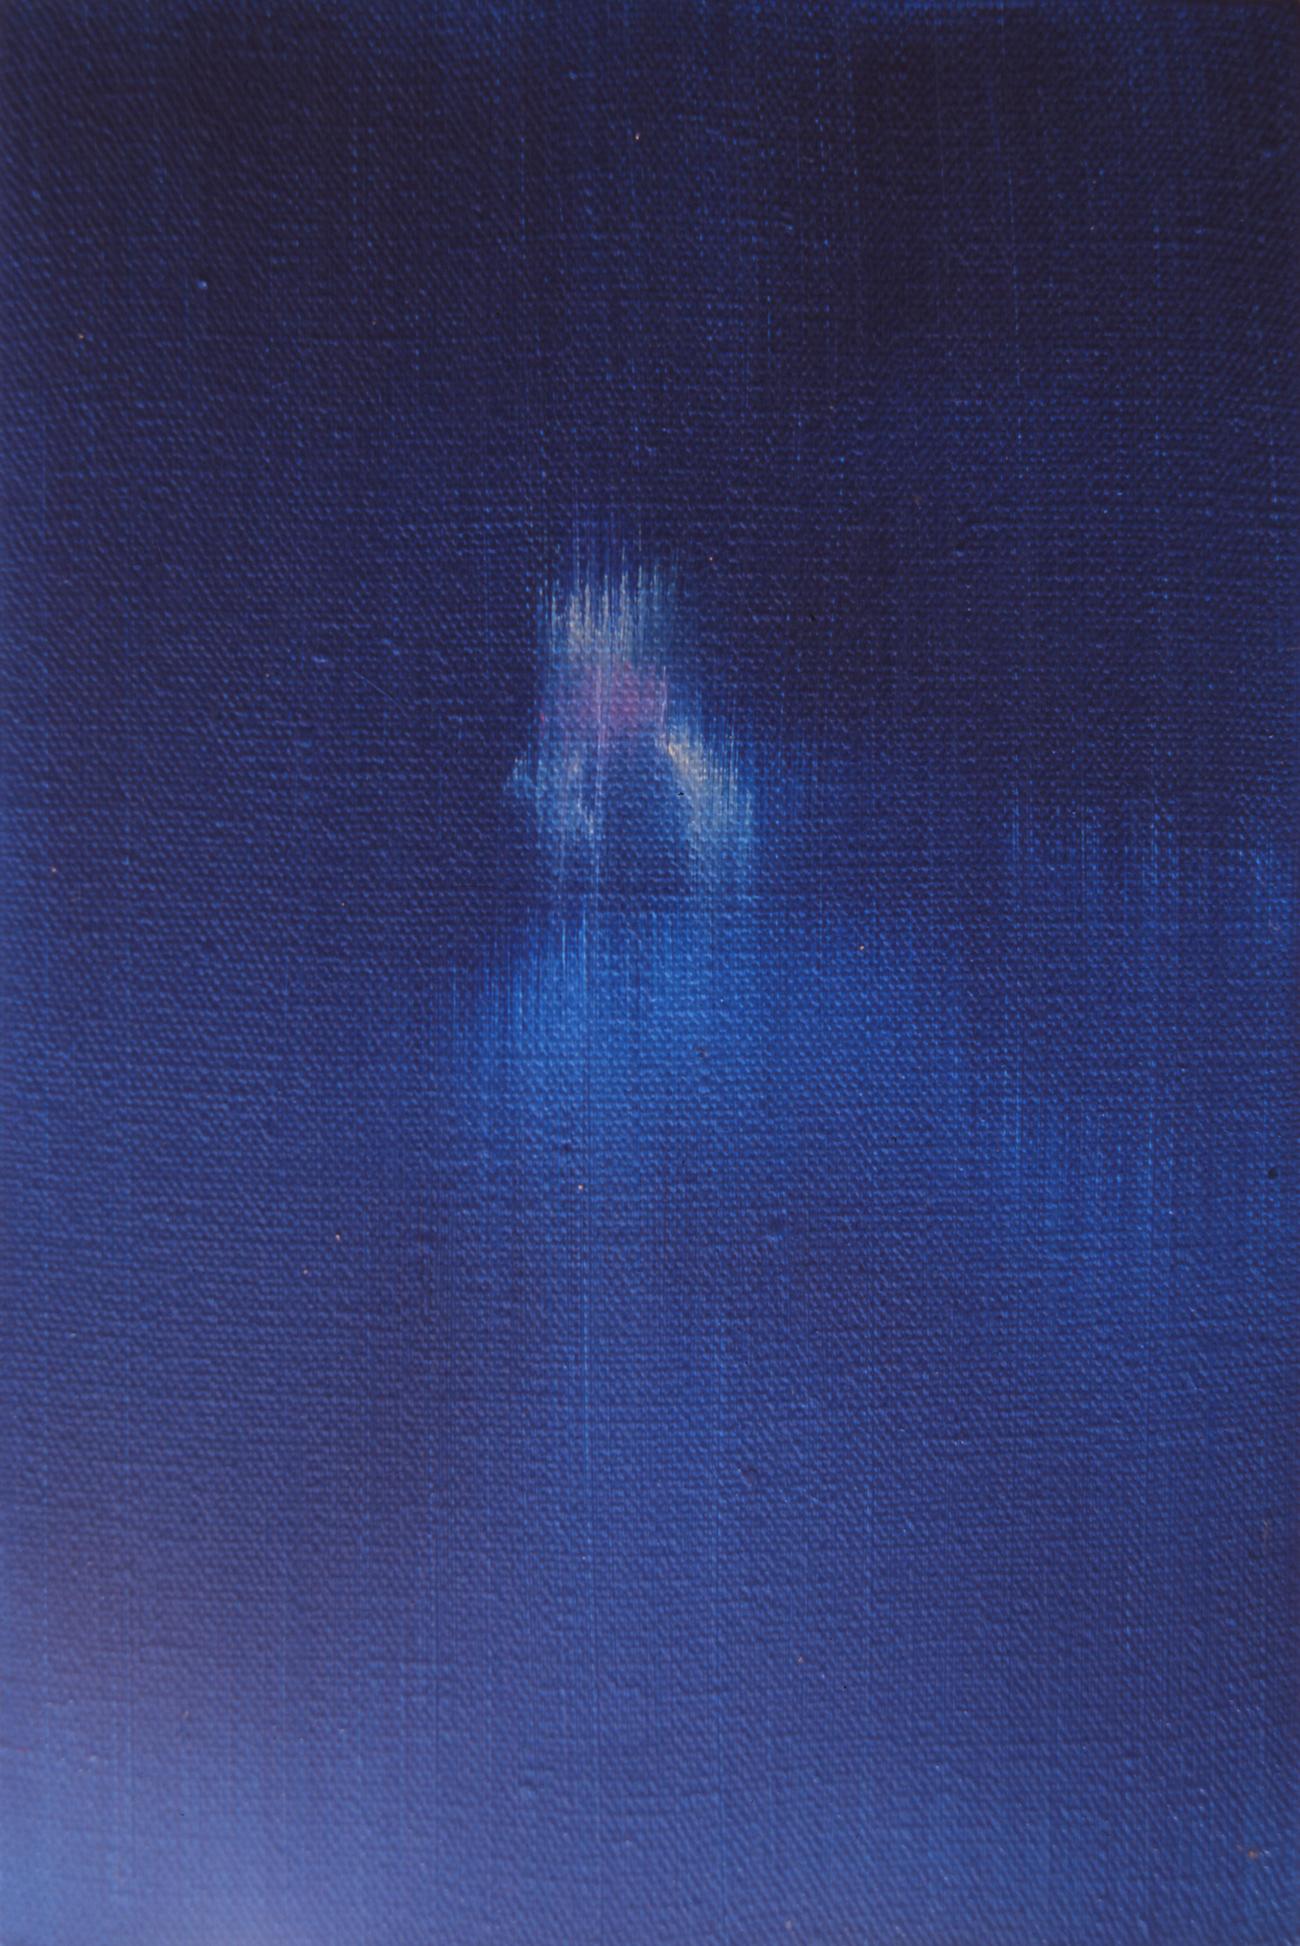 Figurative Painting He Wenjue - Peinture figurative texturée contemporaine texturée - Série Aquarelle n°3